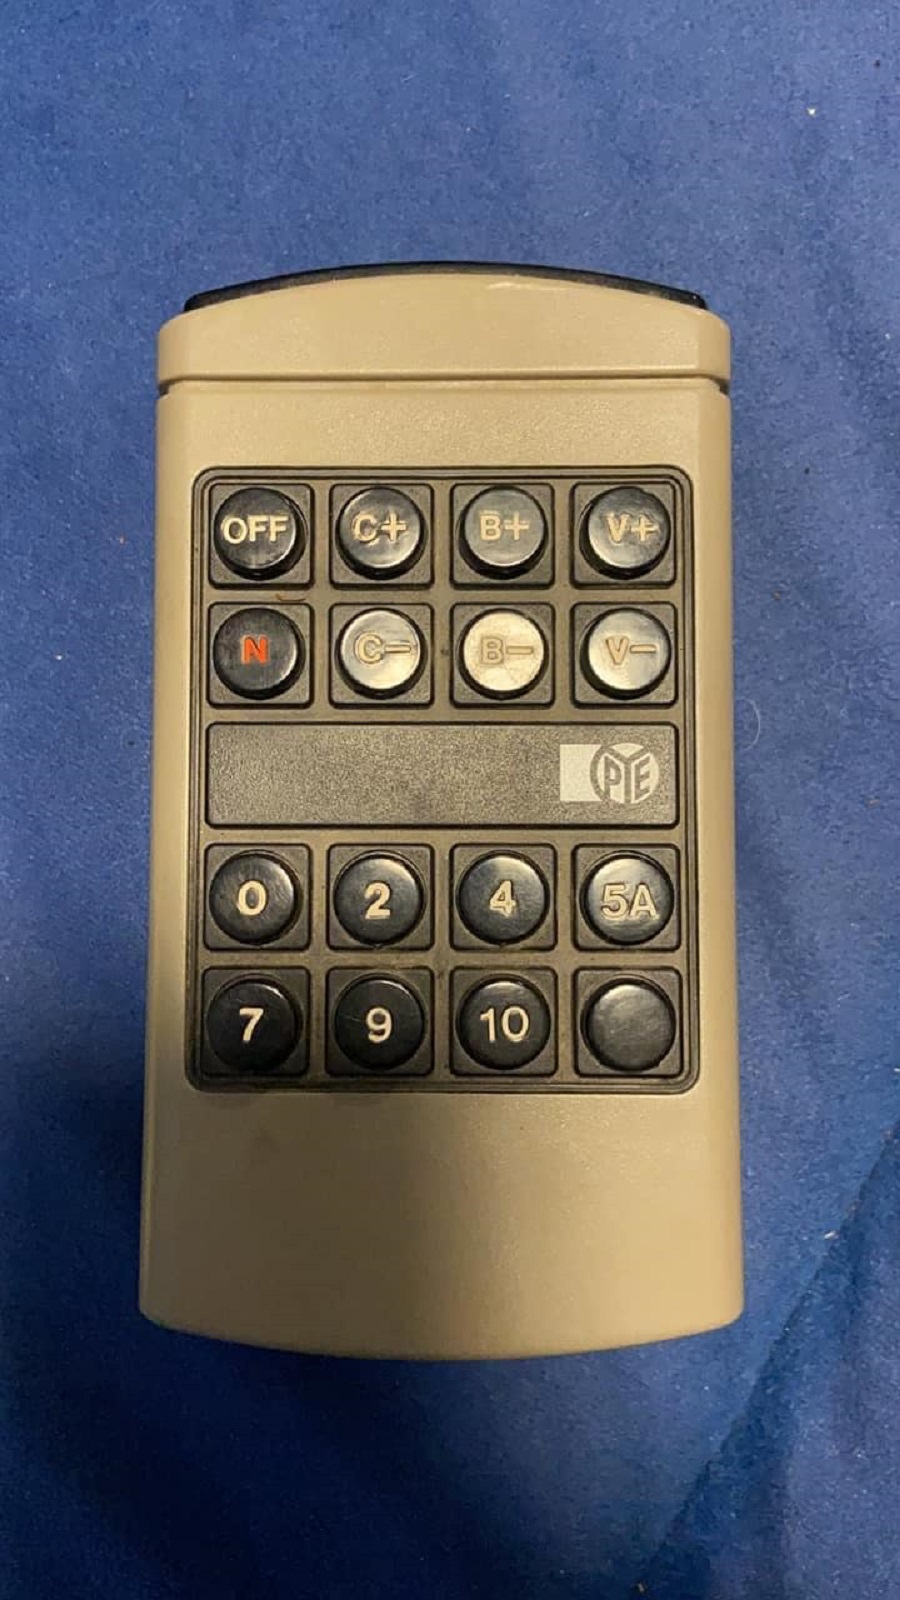 Pye T34 remote control